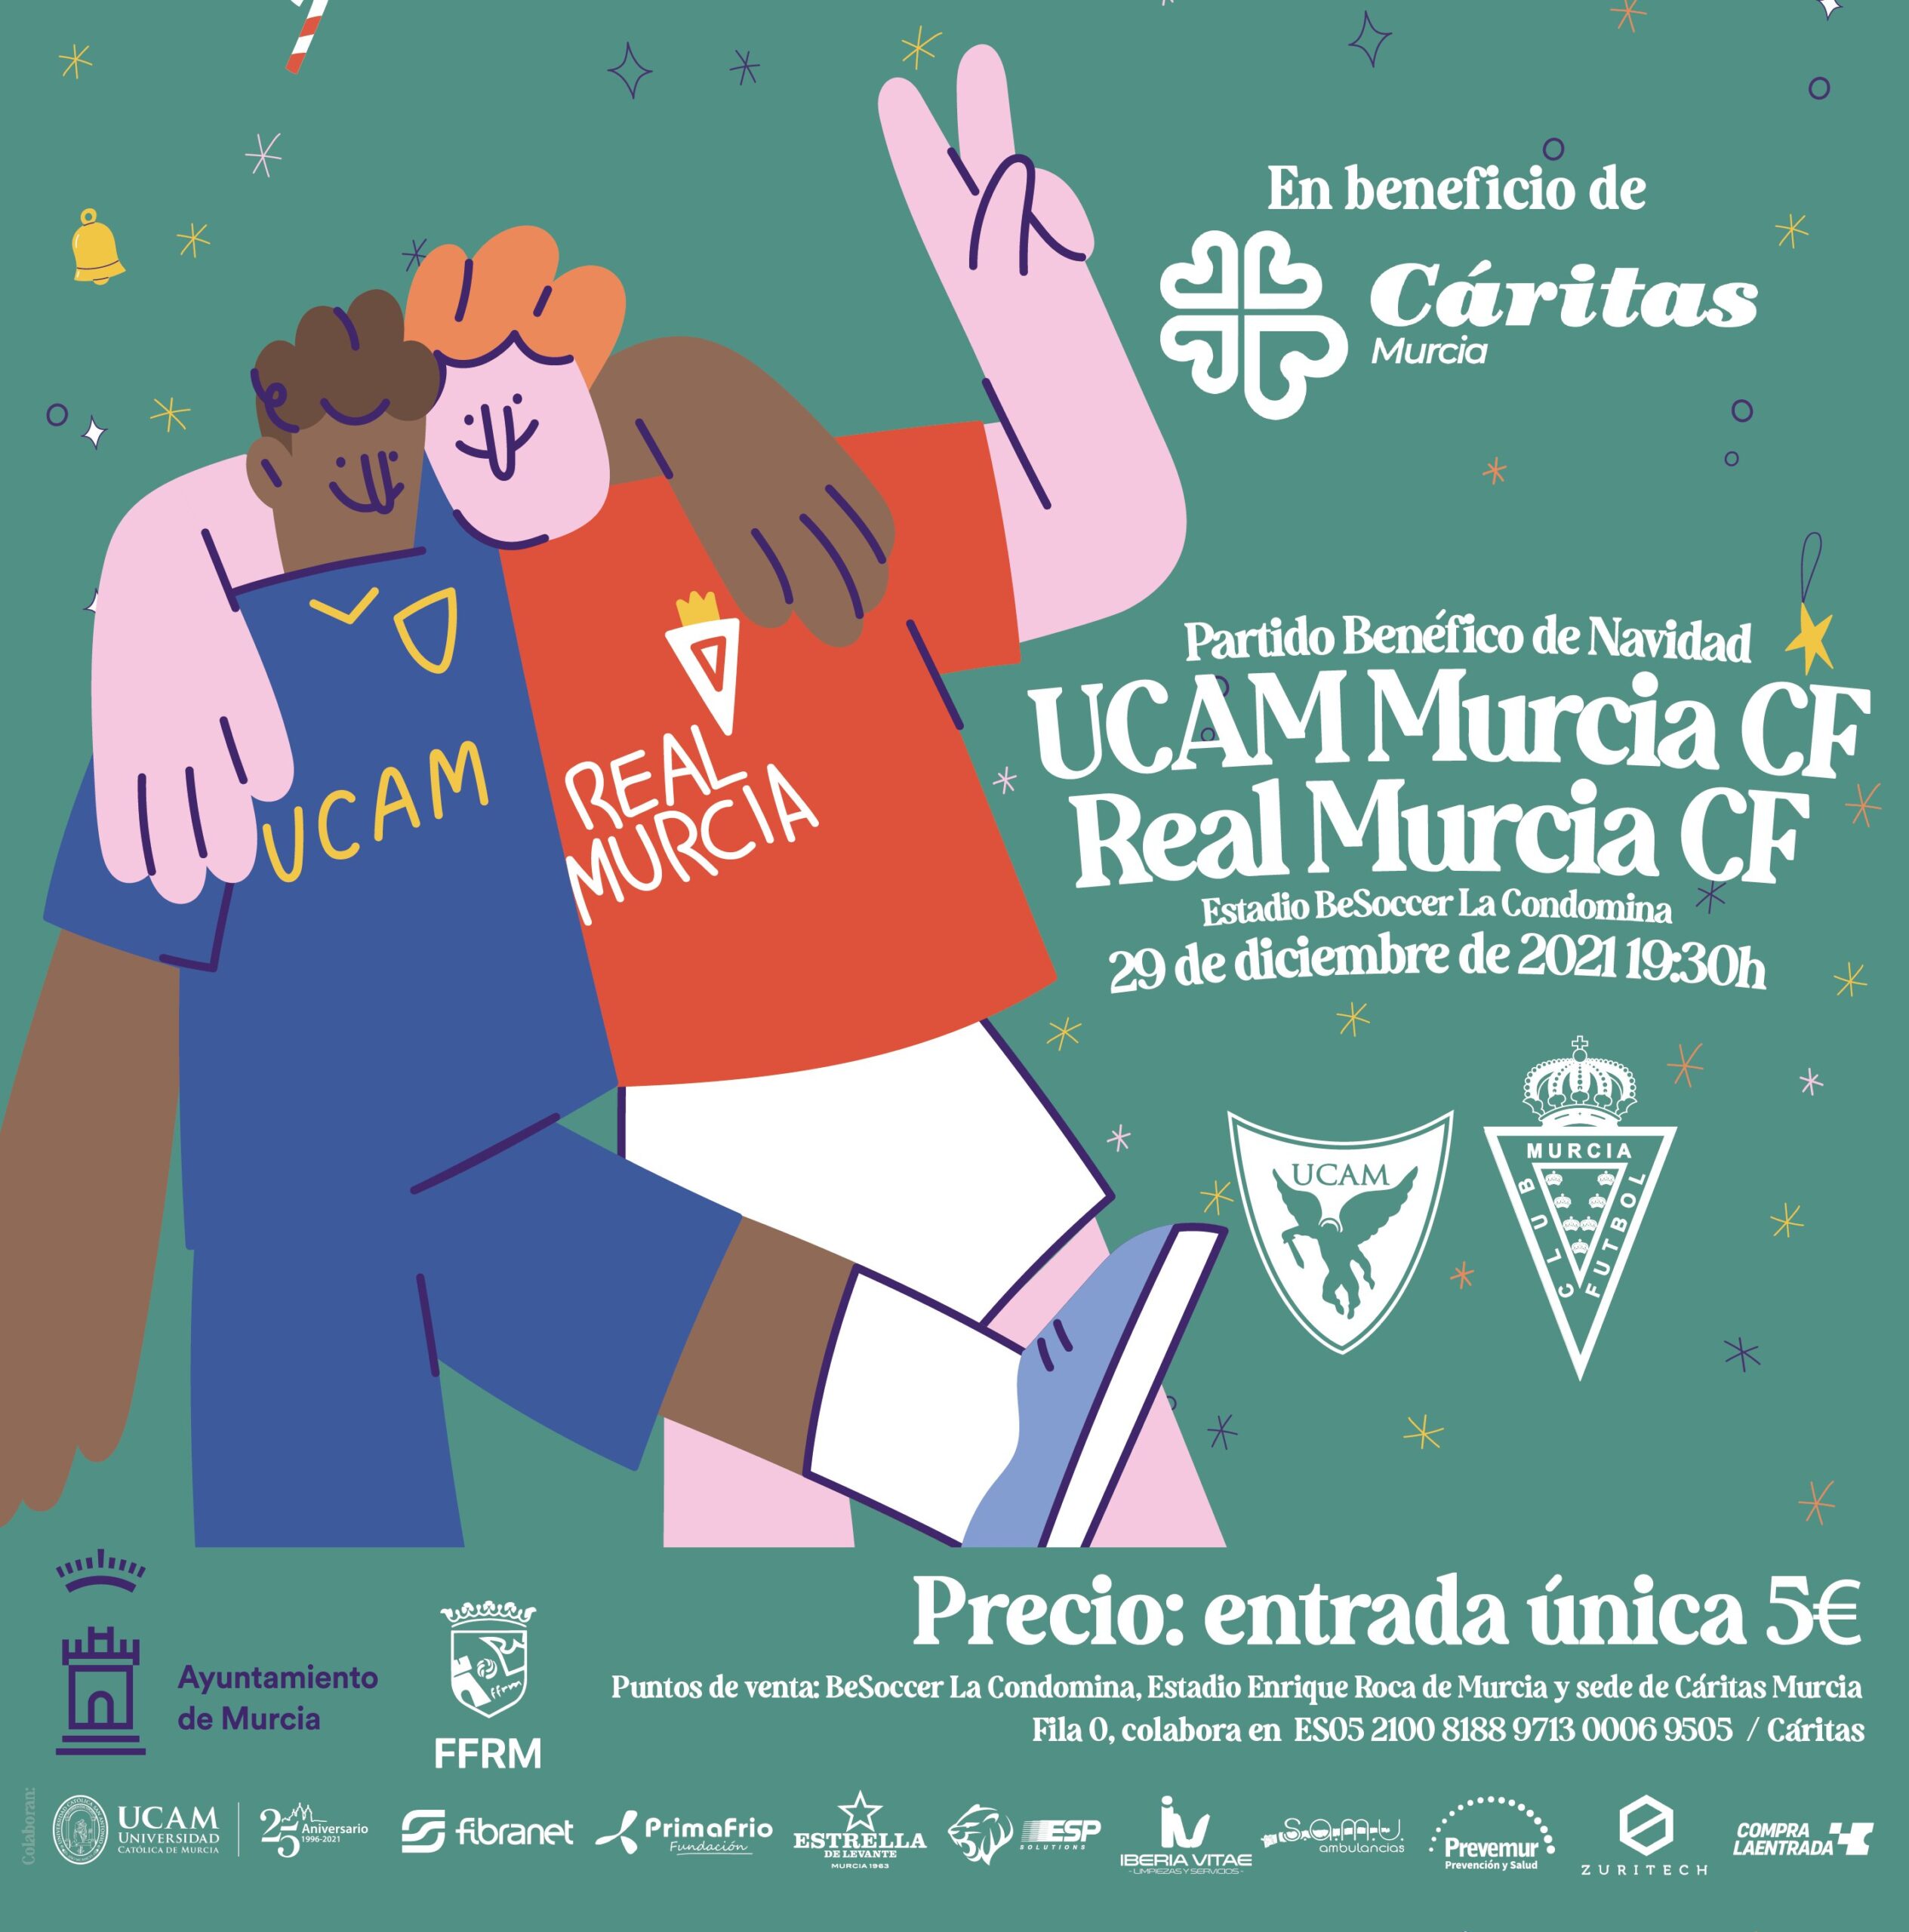 Partido benéfico de Navidad: Real Murcia CF vs Ucam Murcia CF